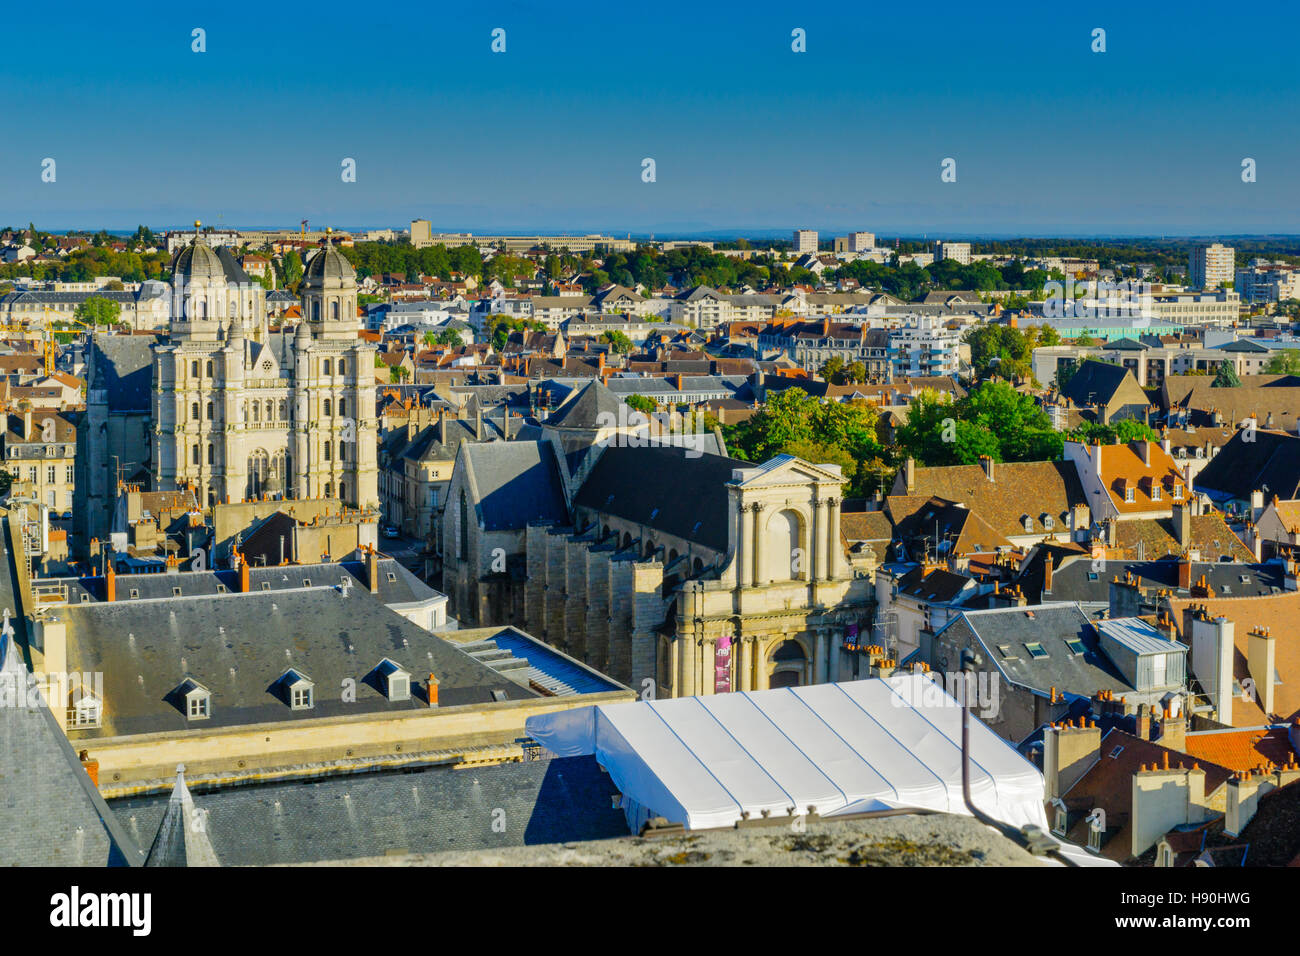 DIJON, FRANCE - 15 octobre 2016 : Une vue aérienne du centre historique de la ville, avec l'église St Michel, à Dijon, Bourgogne, France Banque D'Images